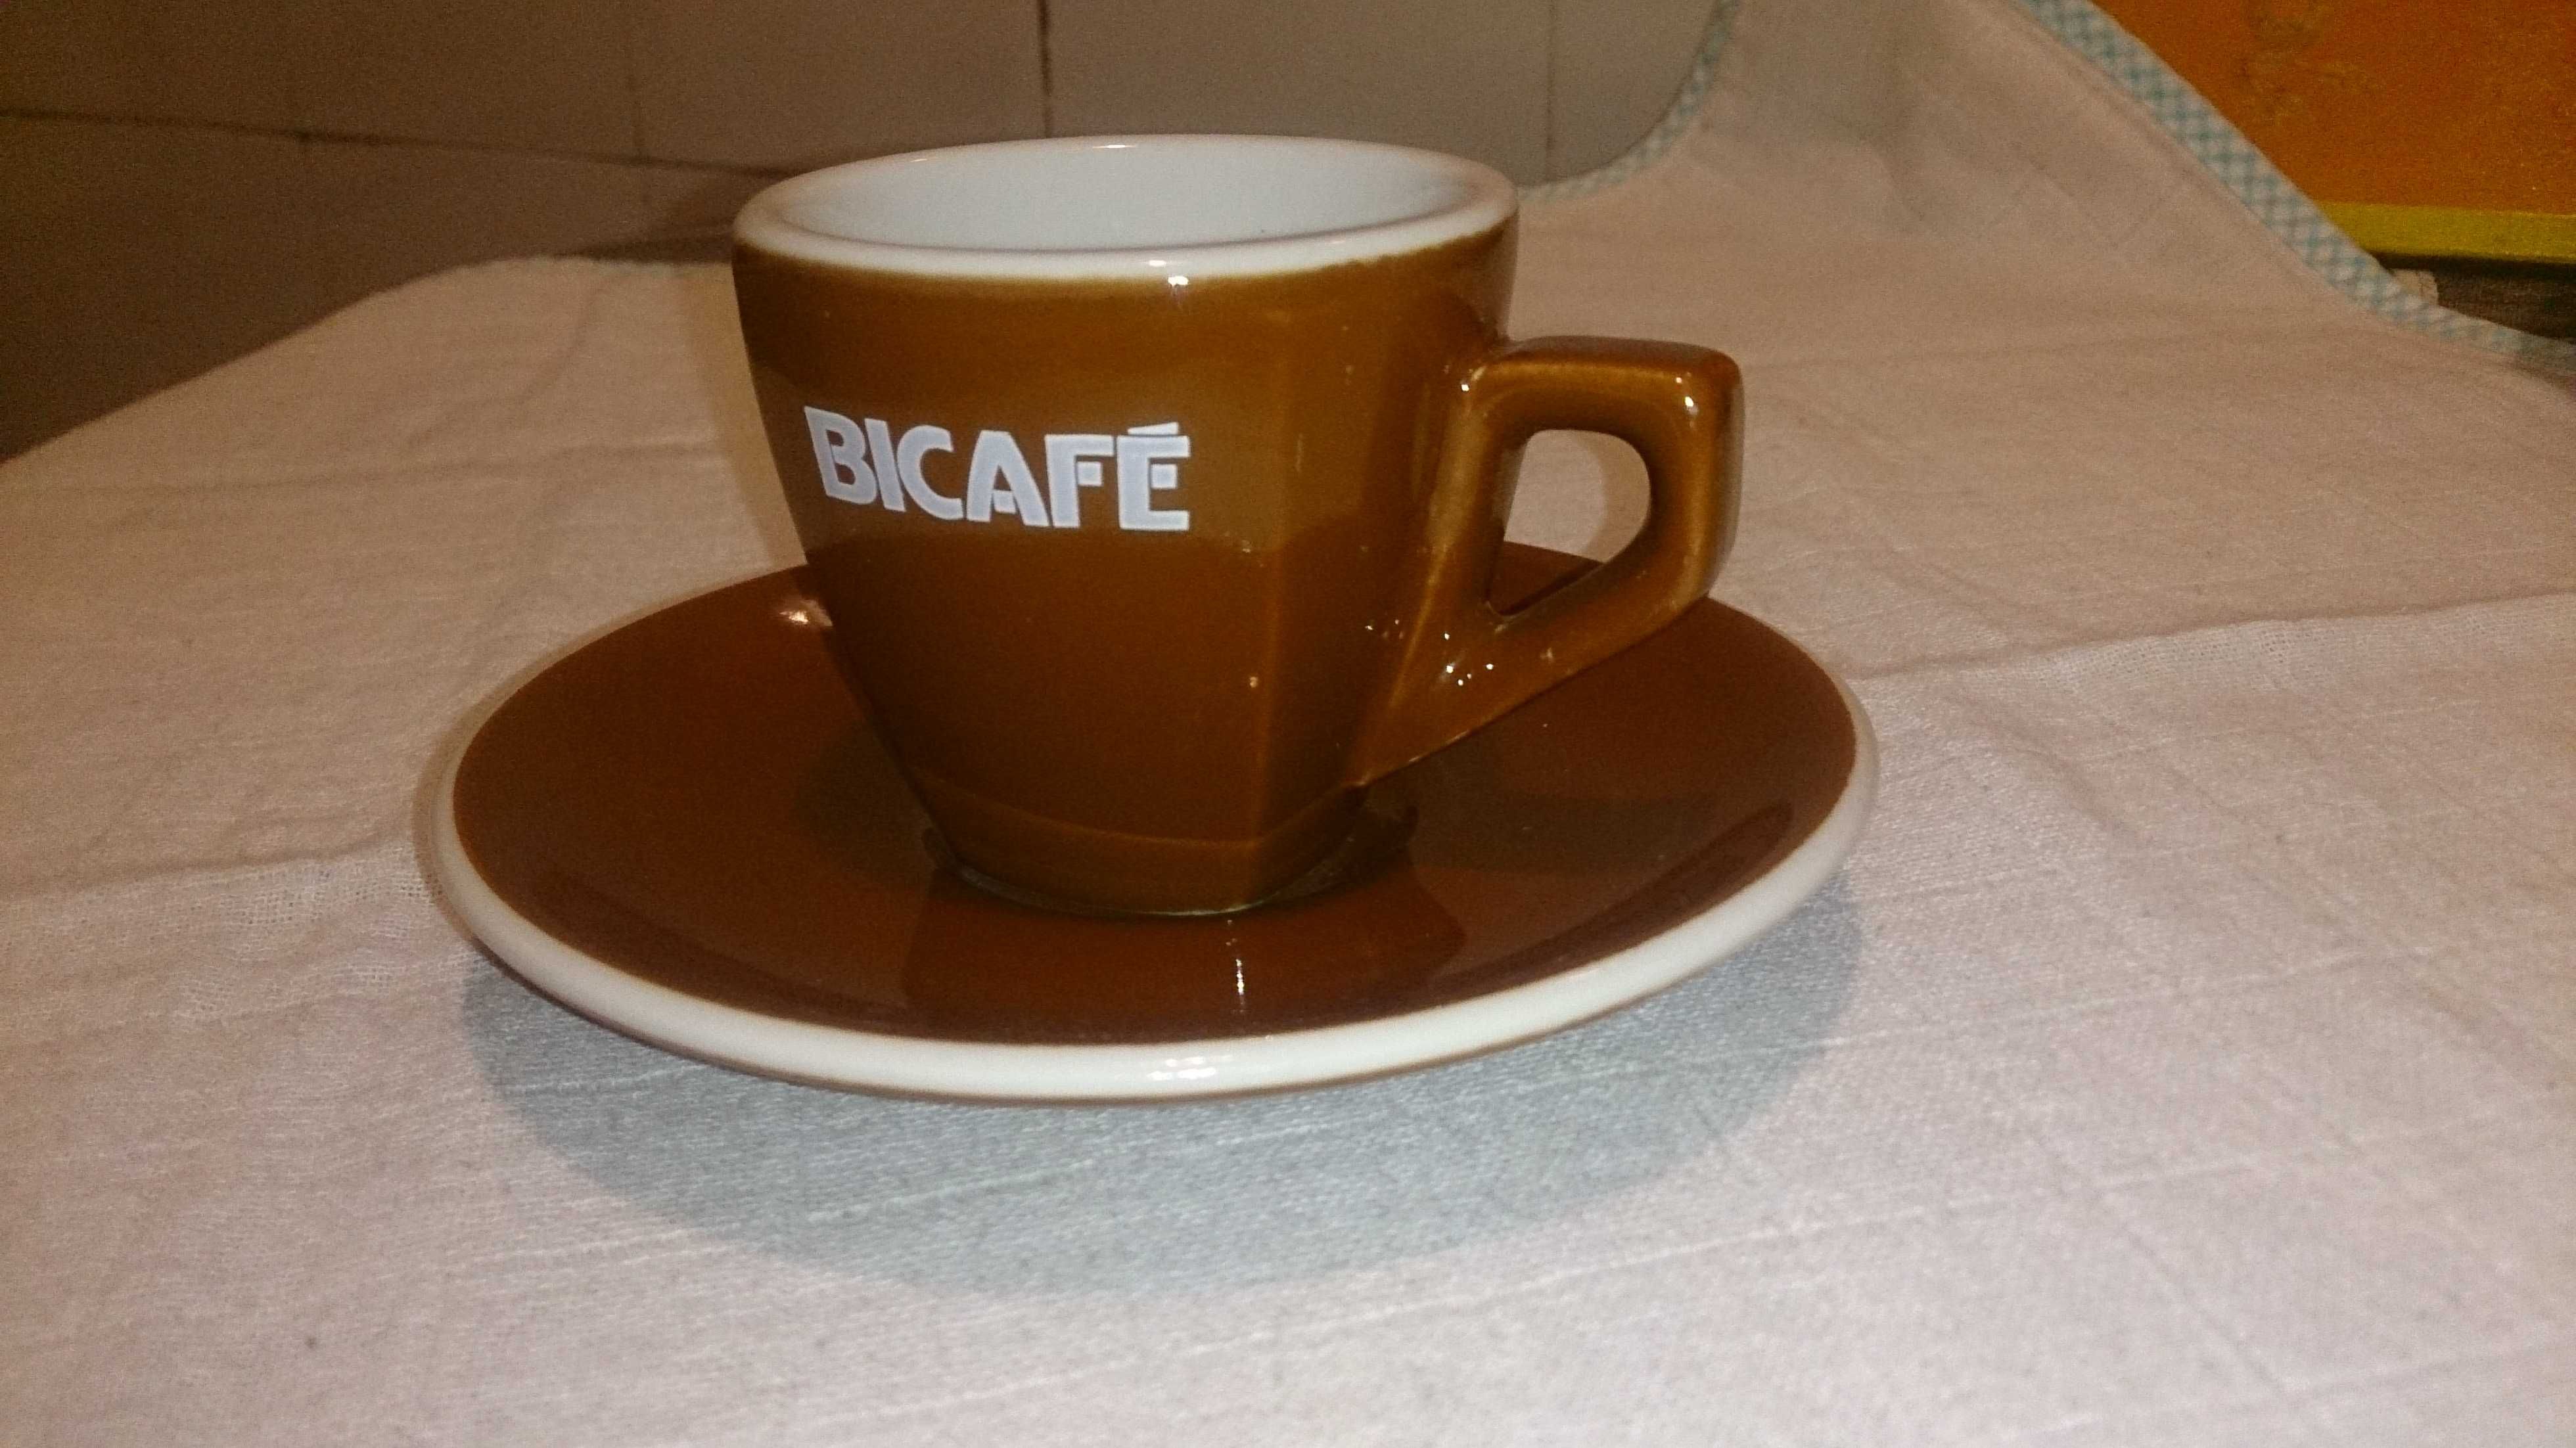 chávena de café bicafé (made in italy) original